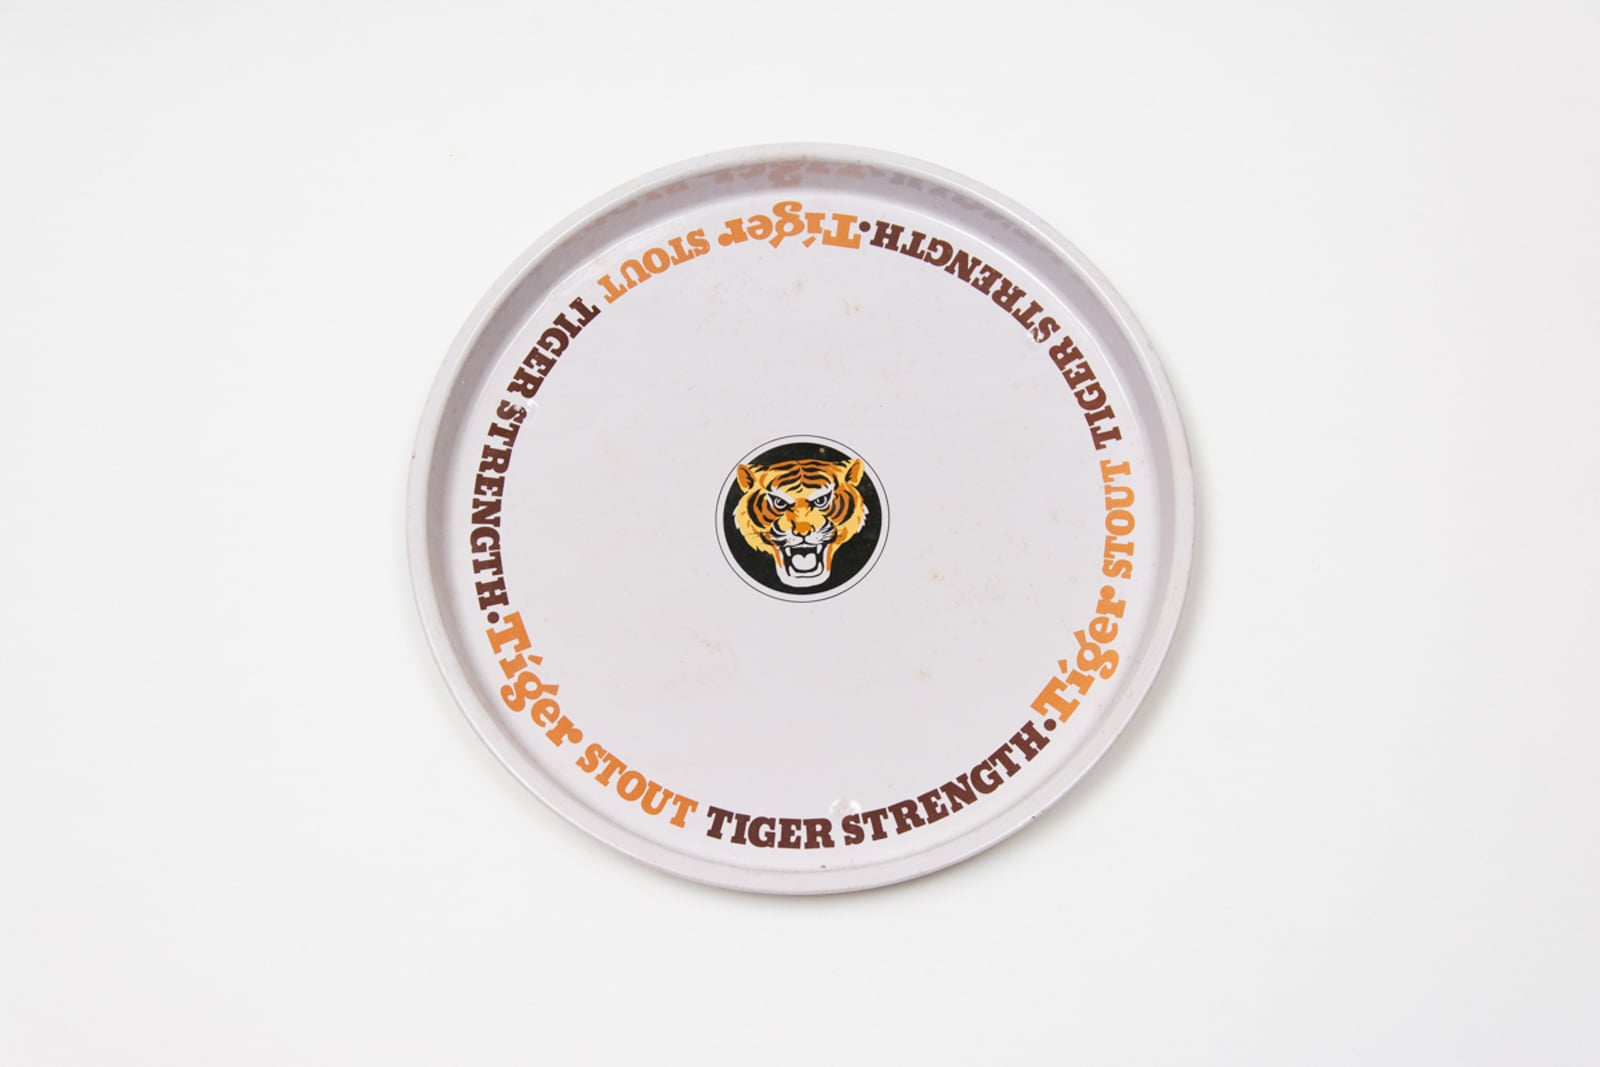 Tiger Logo Serving Tray